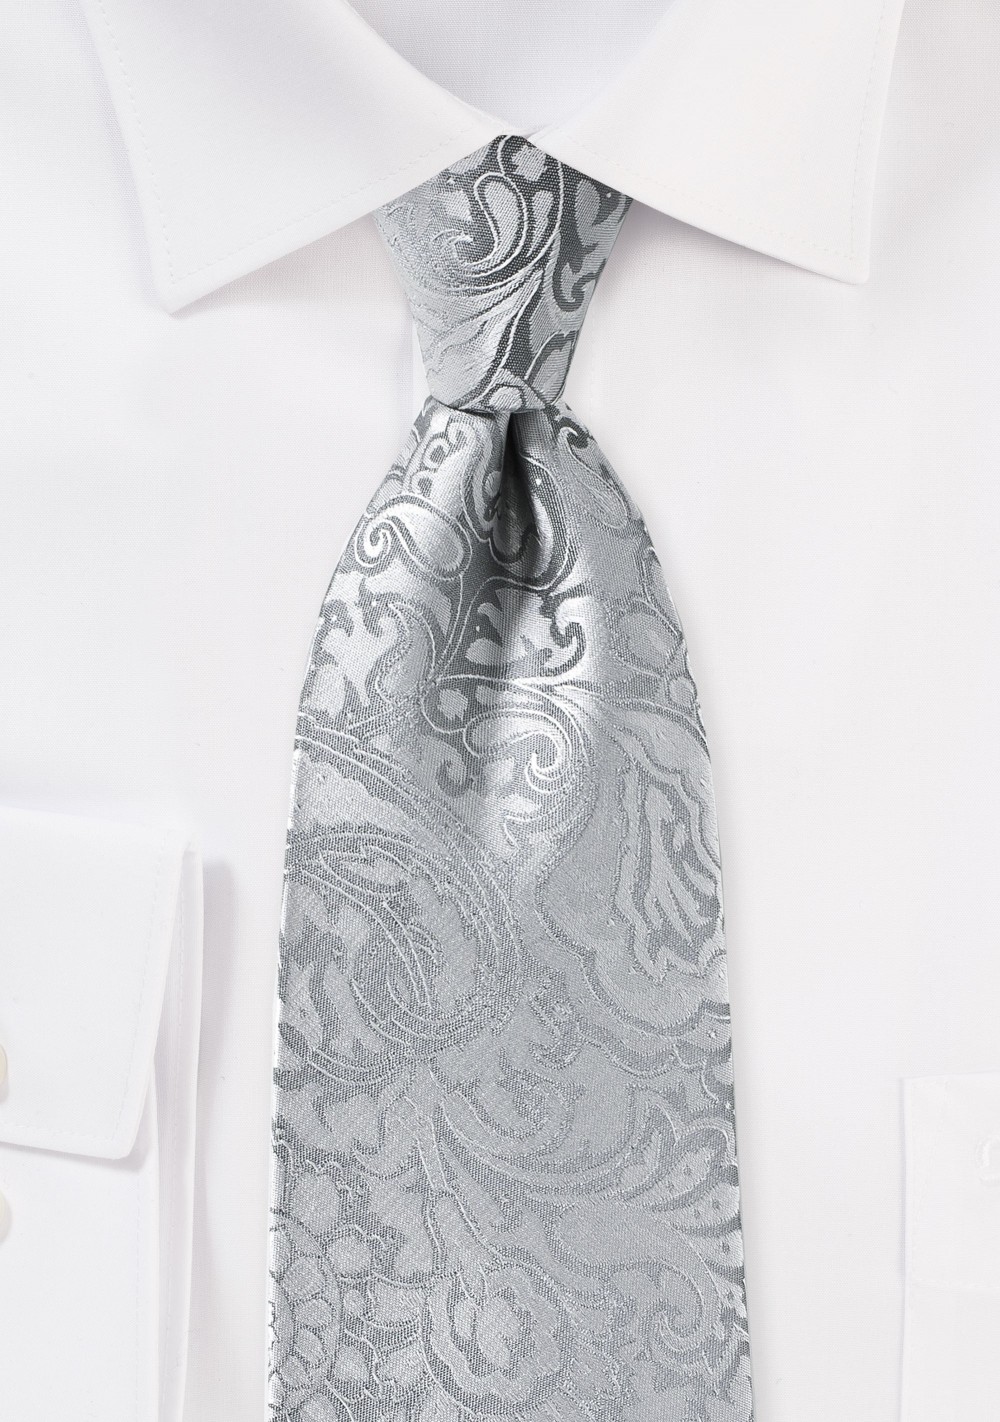 Silver Paisley Tie in XL